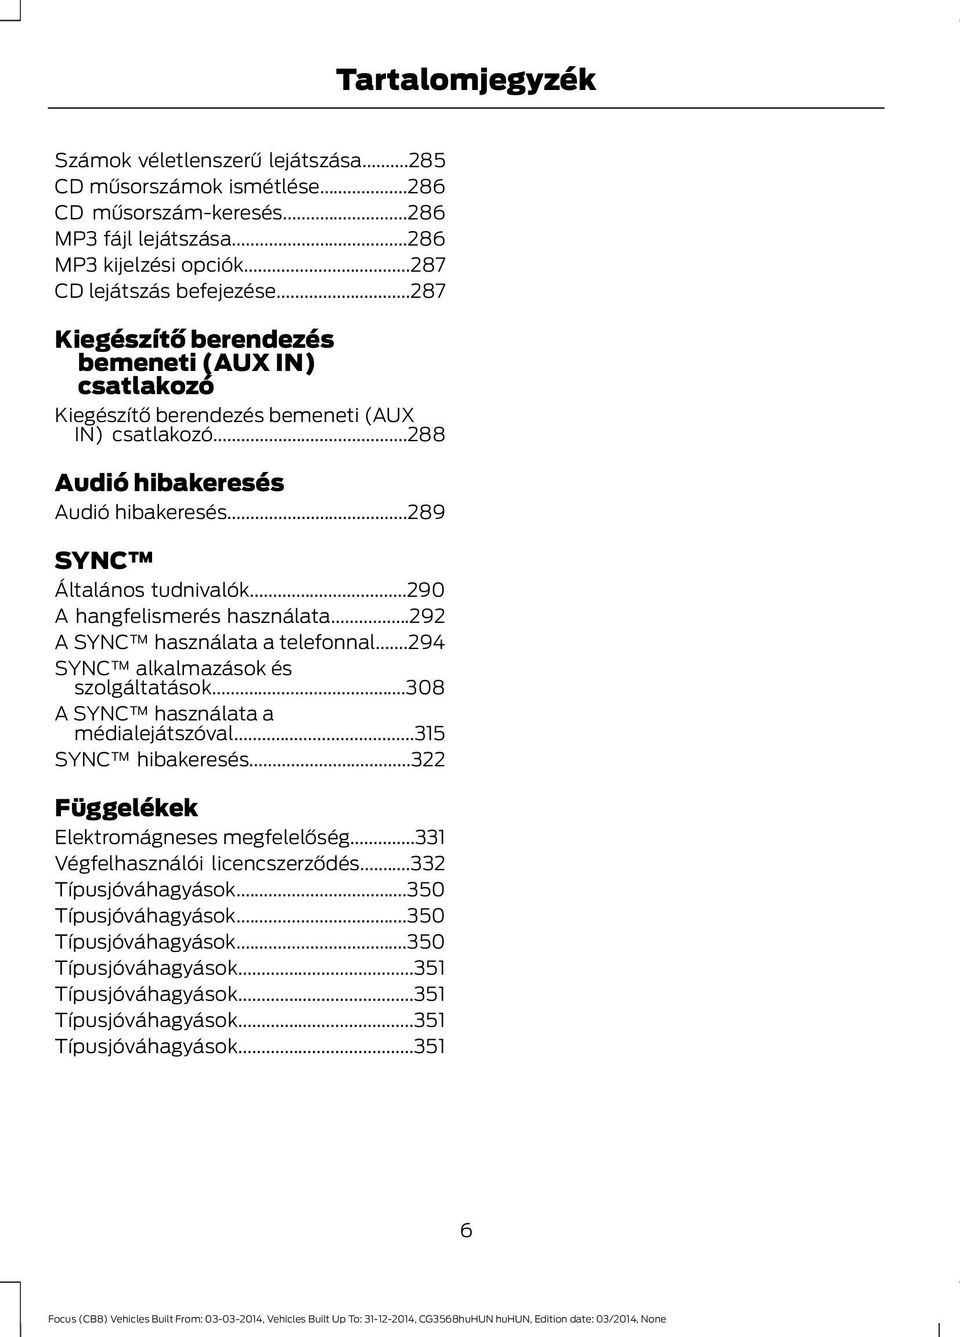 FORD FOCUS Kezelési kézikönyv - PDF Ingyenes letöltés